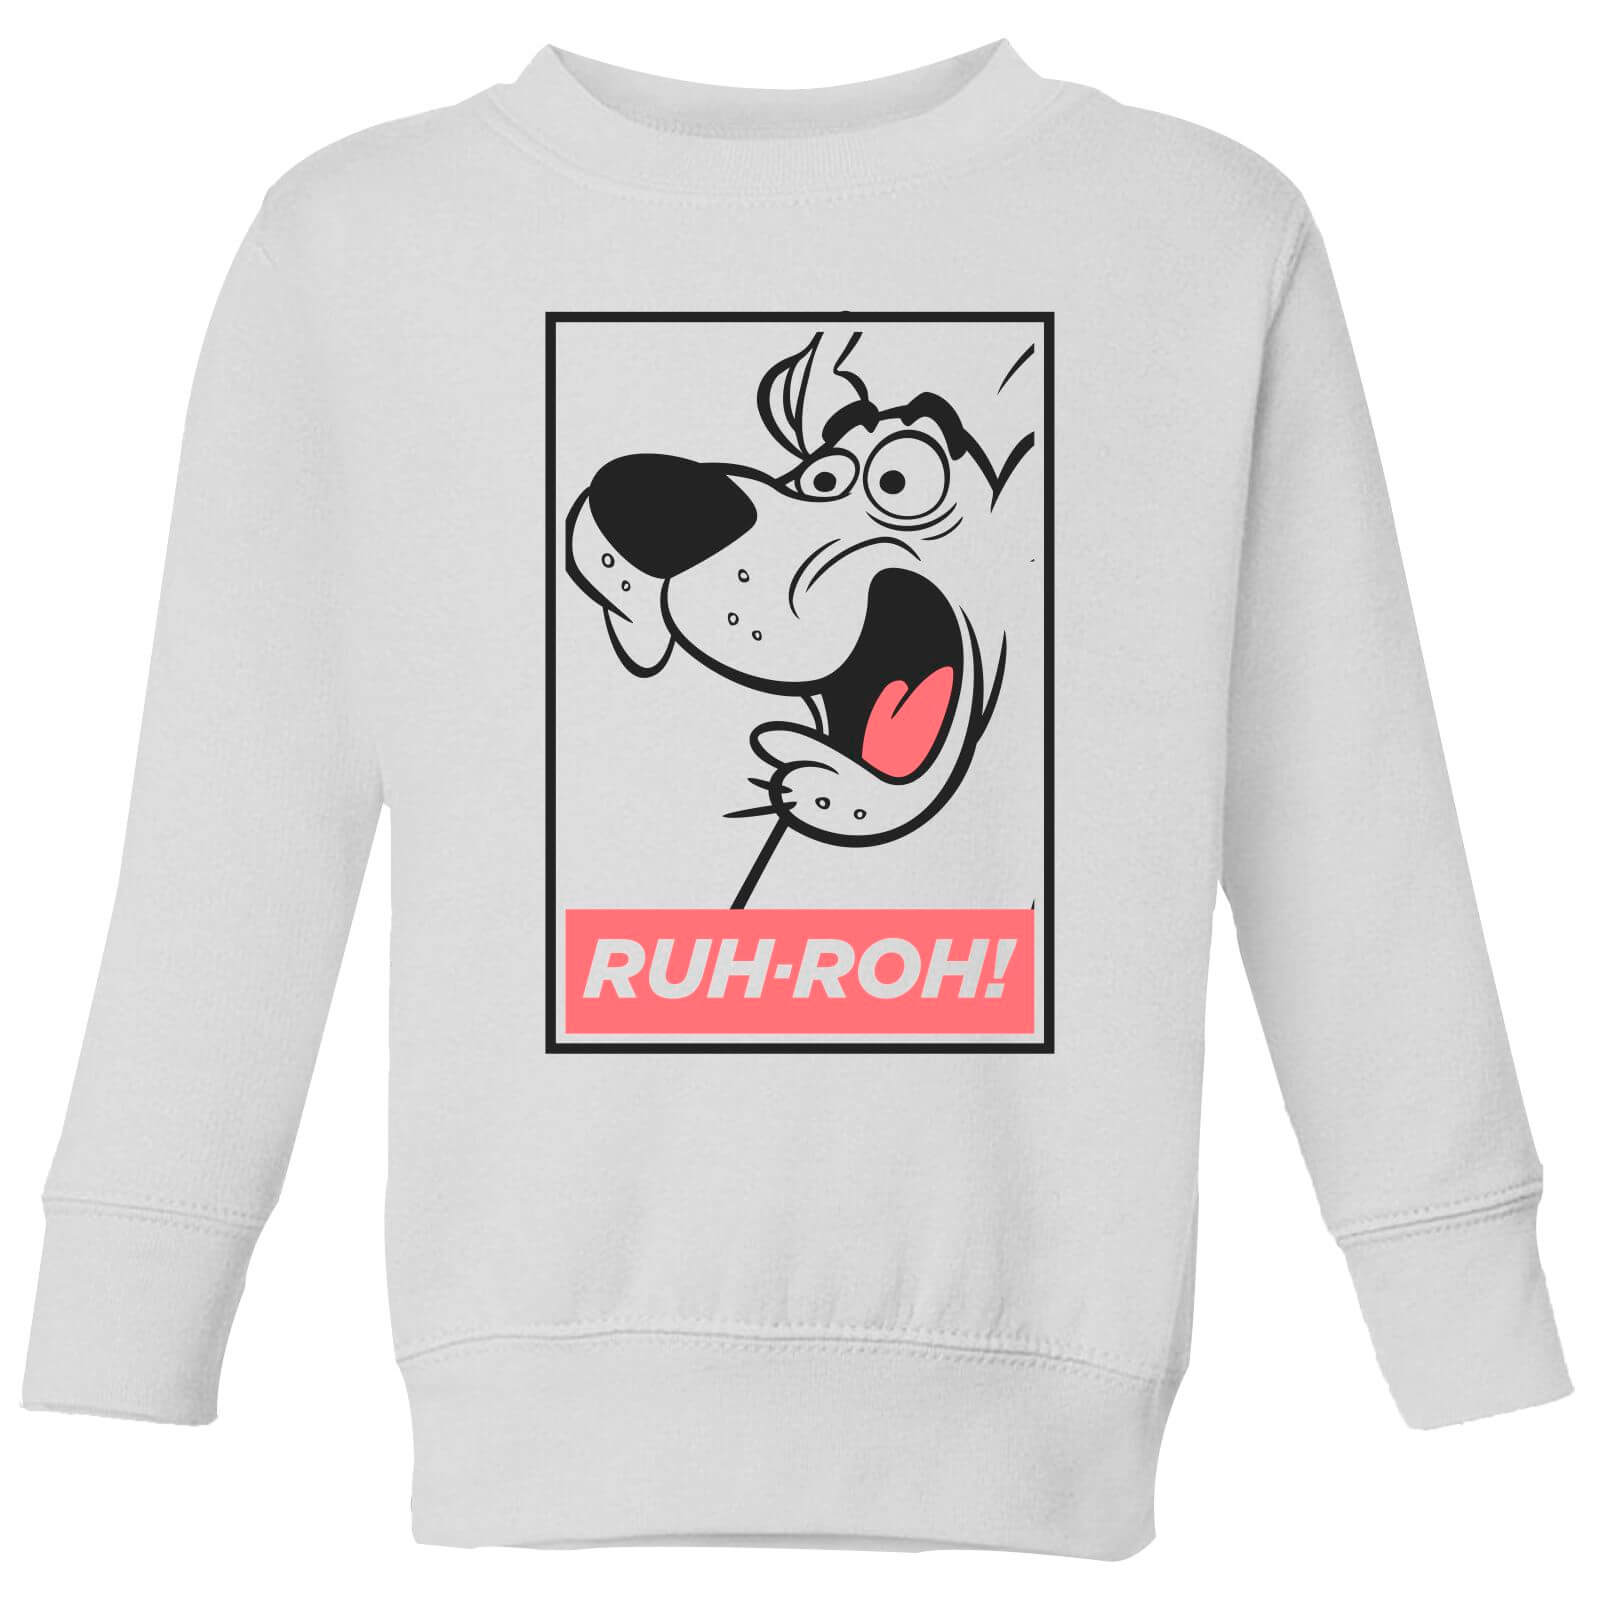 Scooby Doo Ruh-Roh! Kids' Sweatshirt - White - 11-12 Years - White